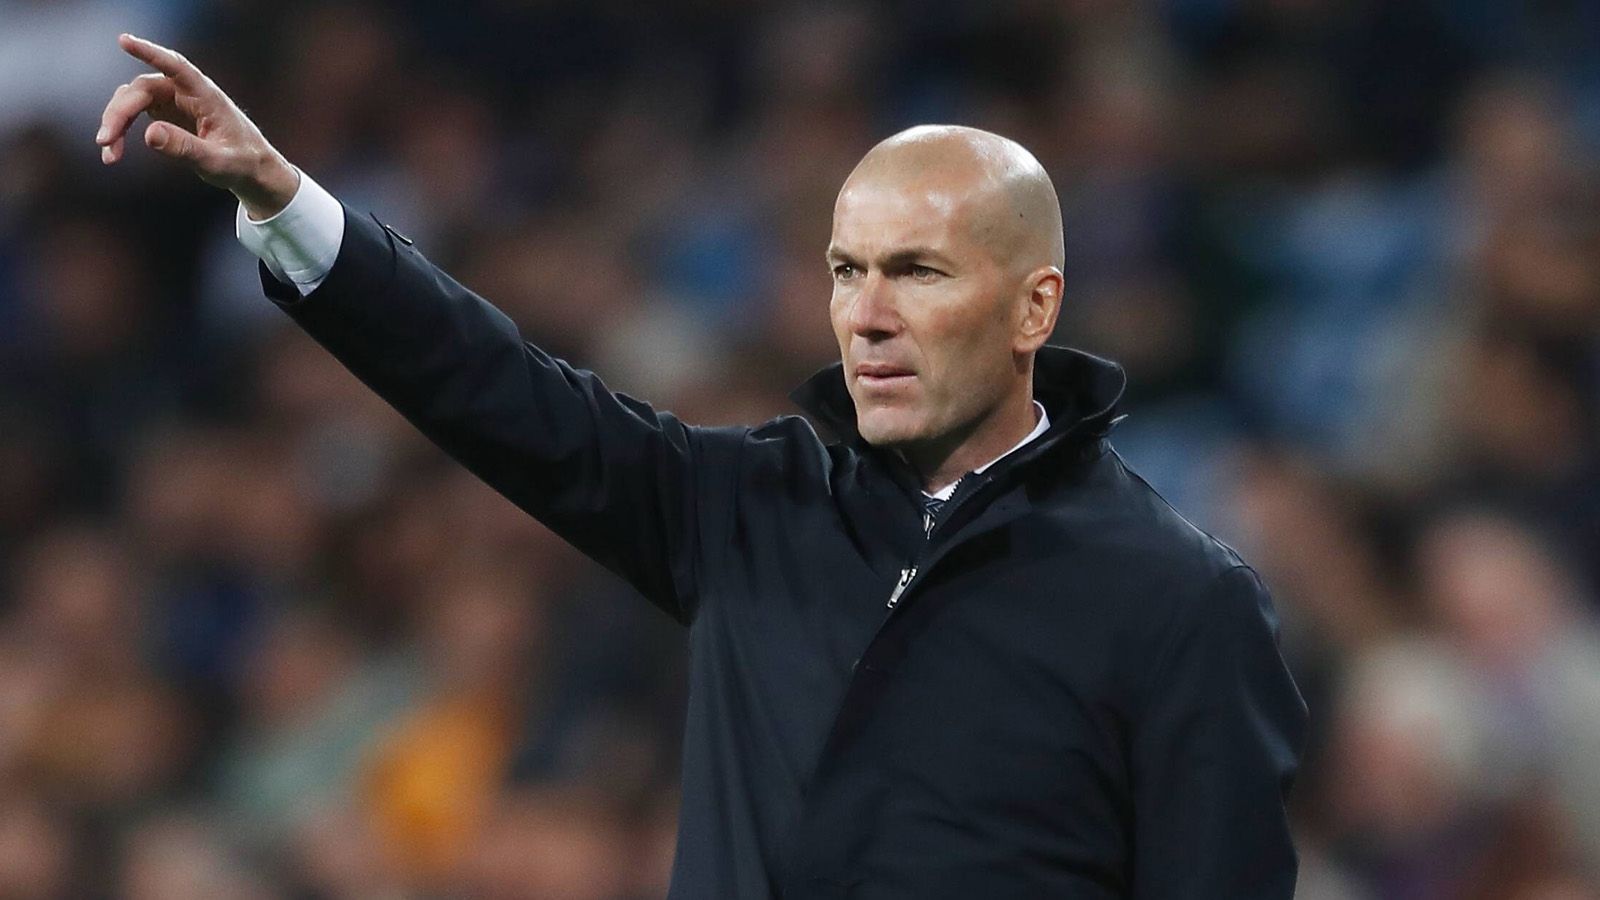 
                <strong>Platz 4 (geteilt): Zinedine Zidane</strong><br>
                Gesamtverdienst pro Jahr: 23 Millionen Euro (21 Millionen Euro Jahresgehalt + 2 Millionen Euro Werbeeinnahmen)Team: Real MadridIm Amt seit: März 2019Vertrag bis: Juni 2022 
              